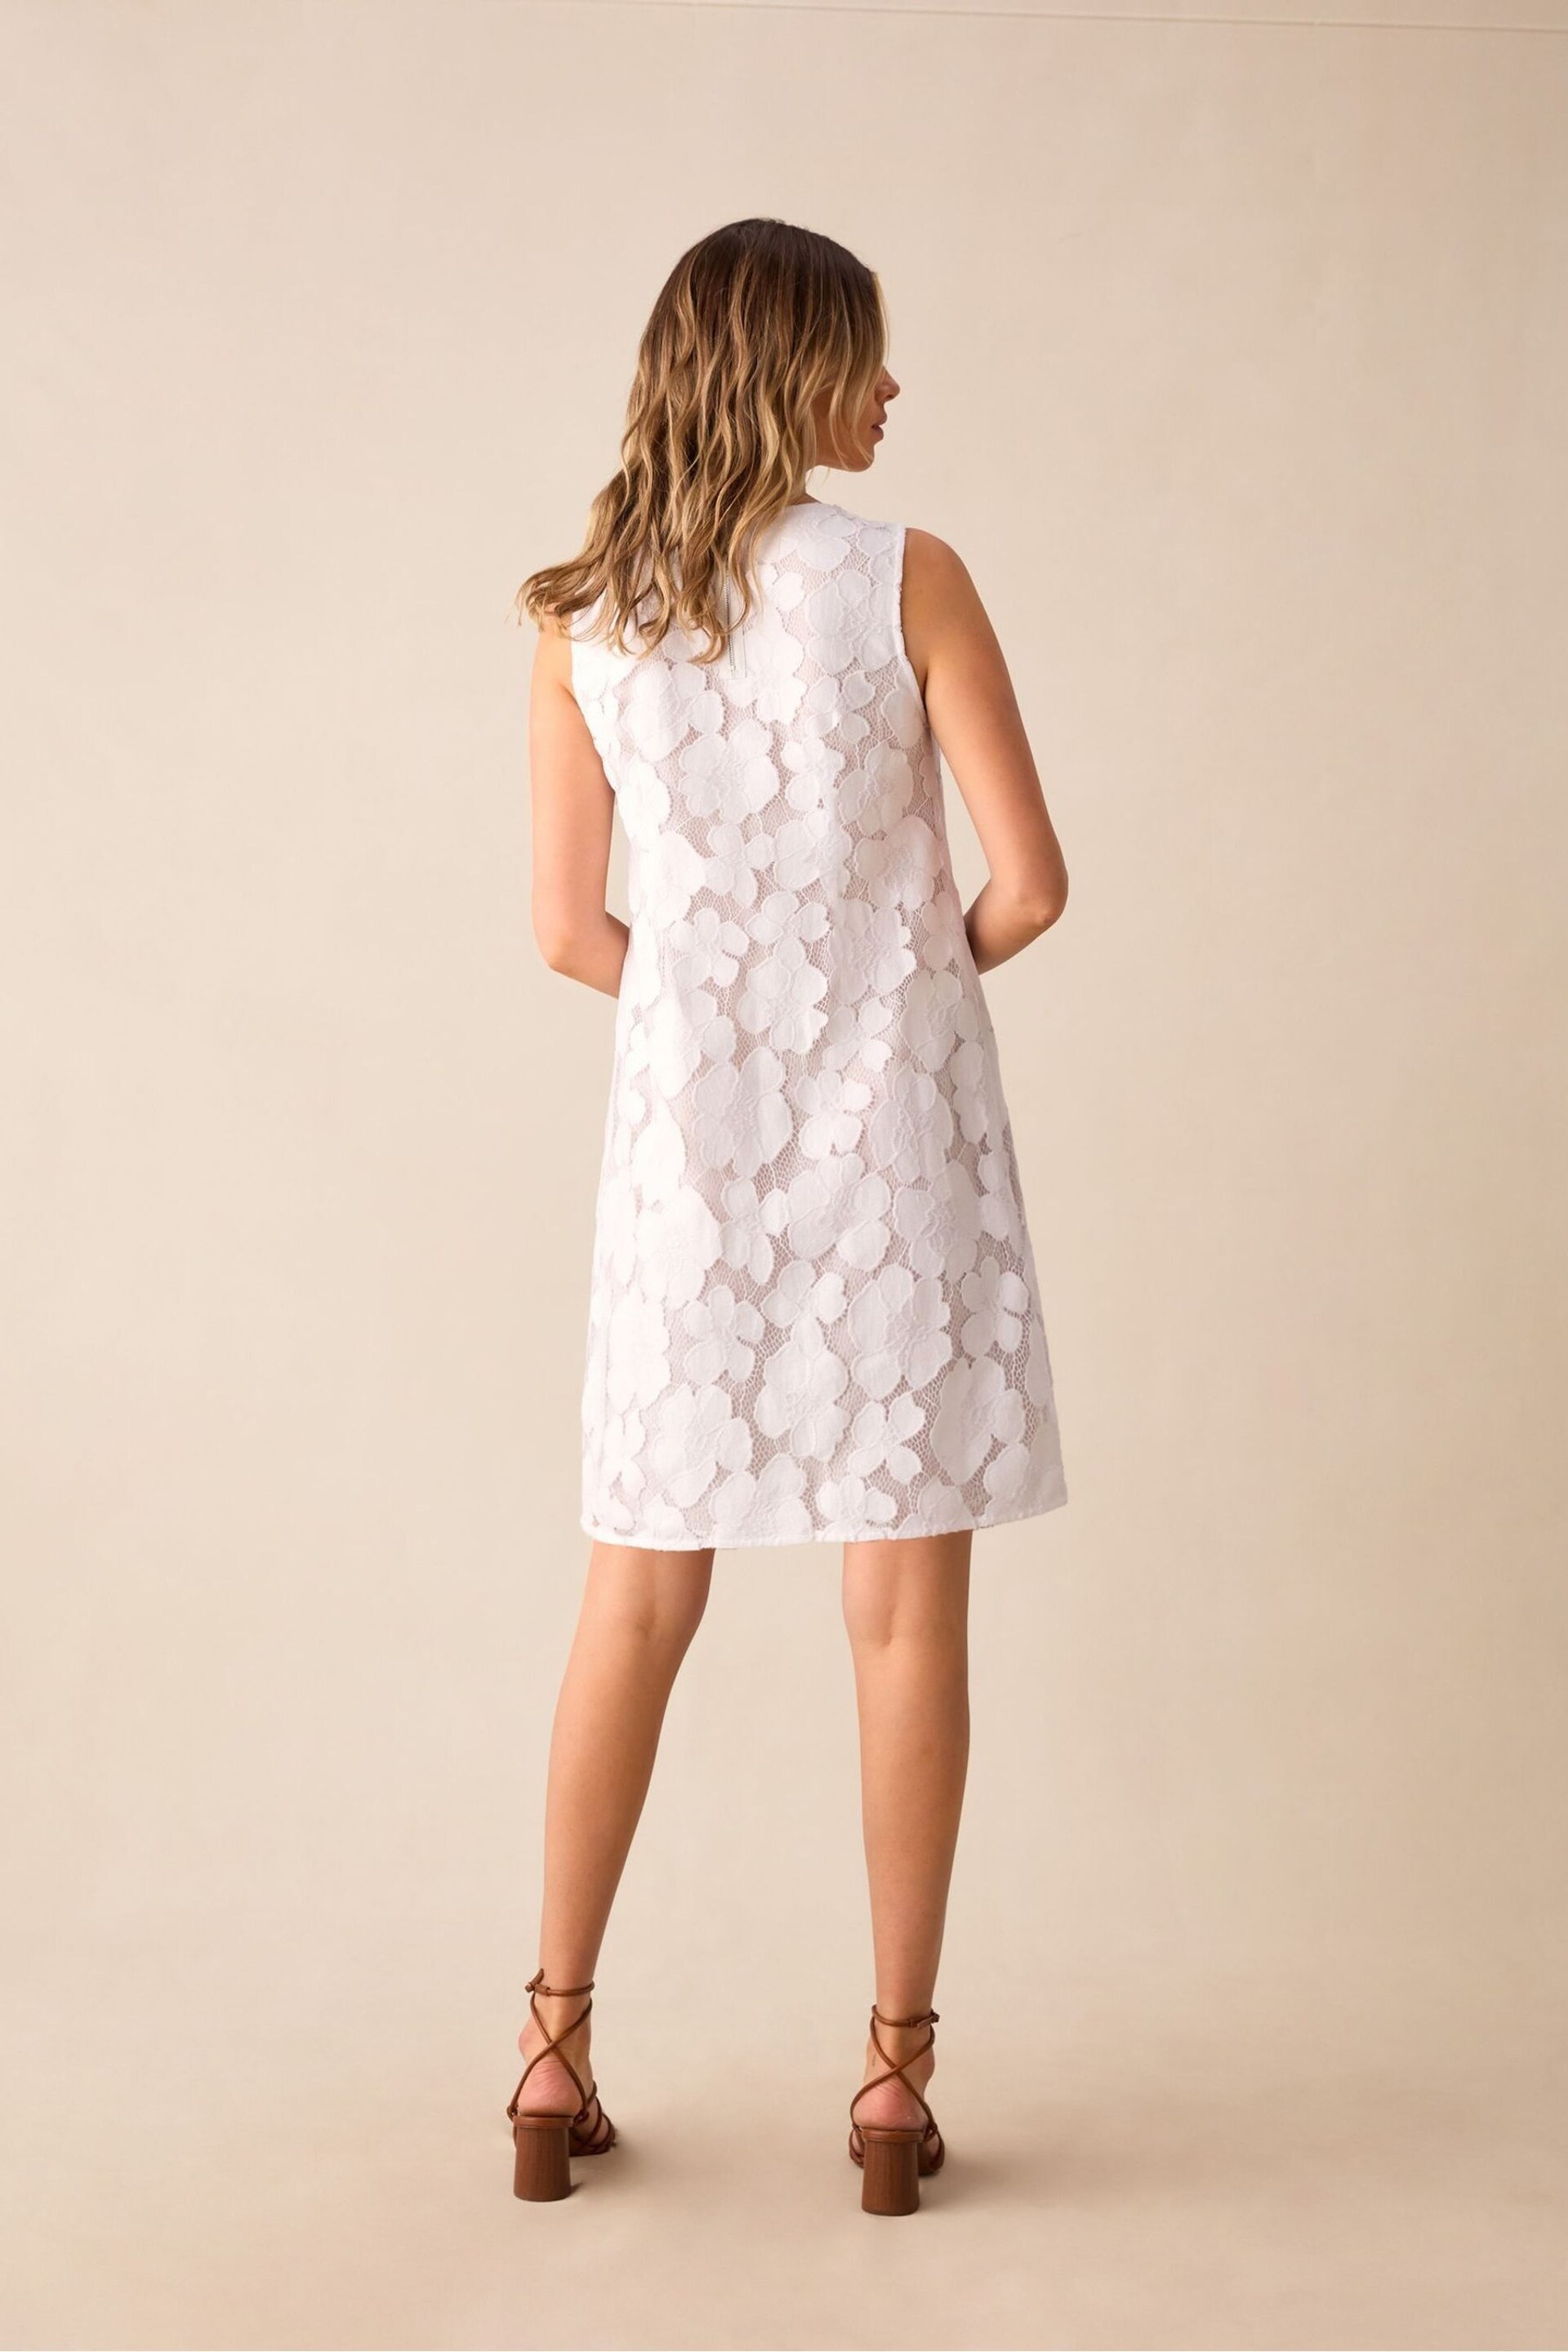 Ro&Zo Lace Mini Shift White Dress - Image 2 of 6